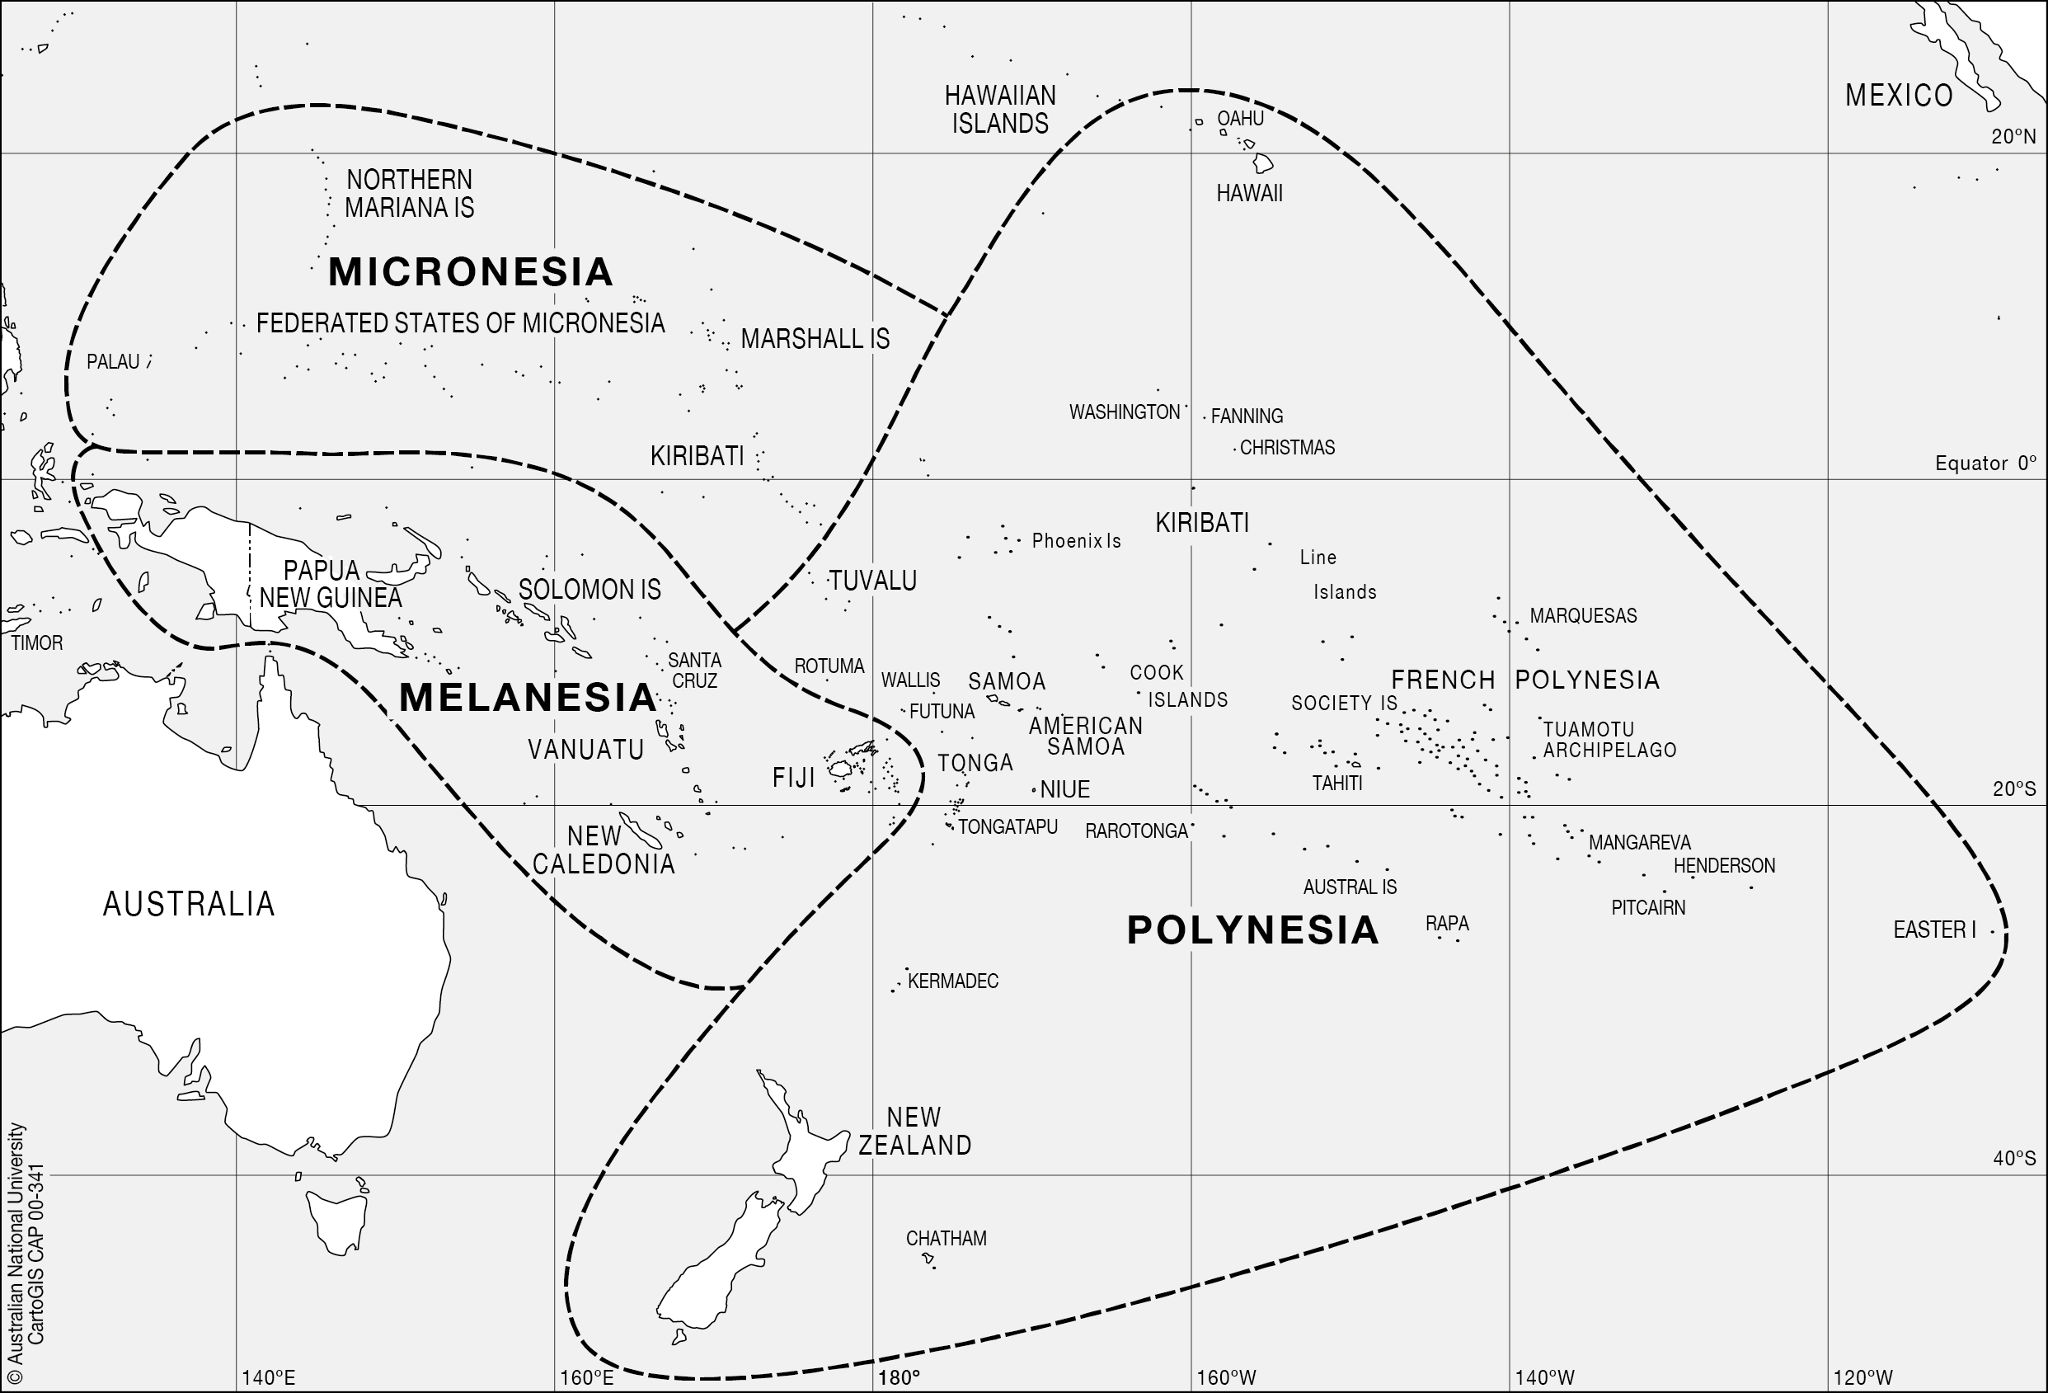 Micronesia-Melanesia-Polynesia